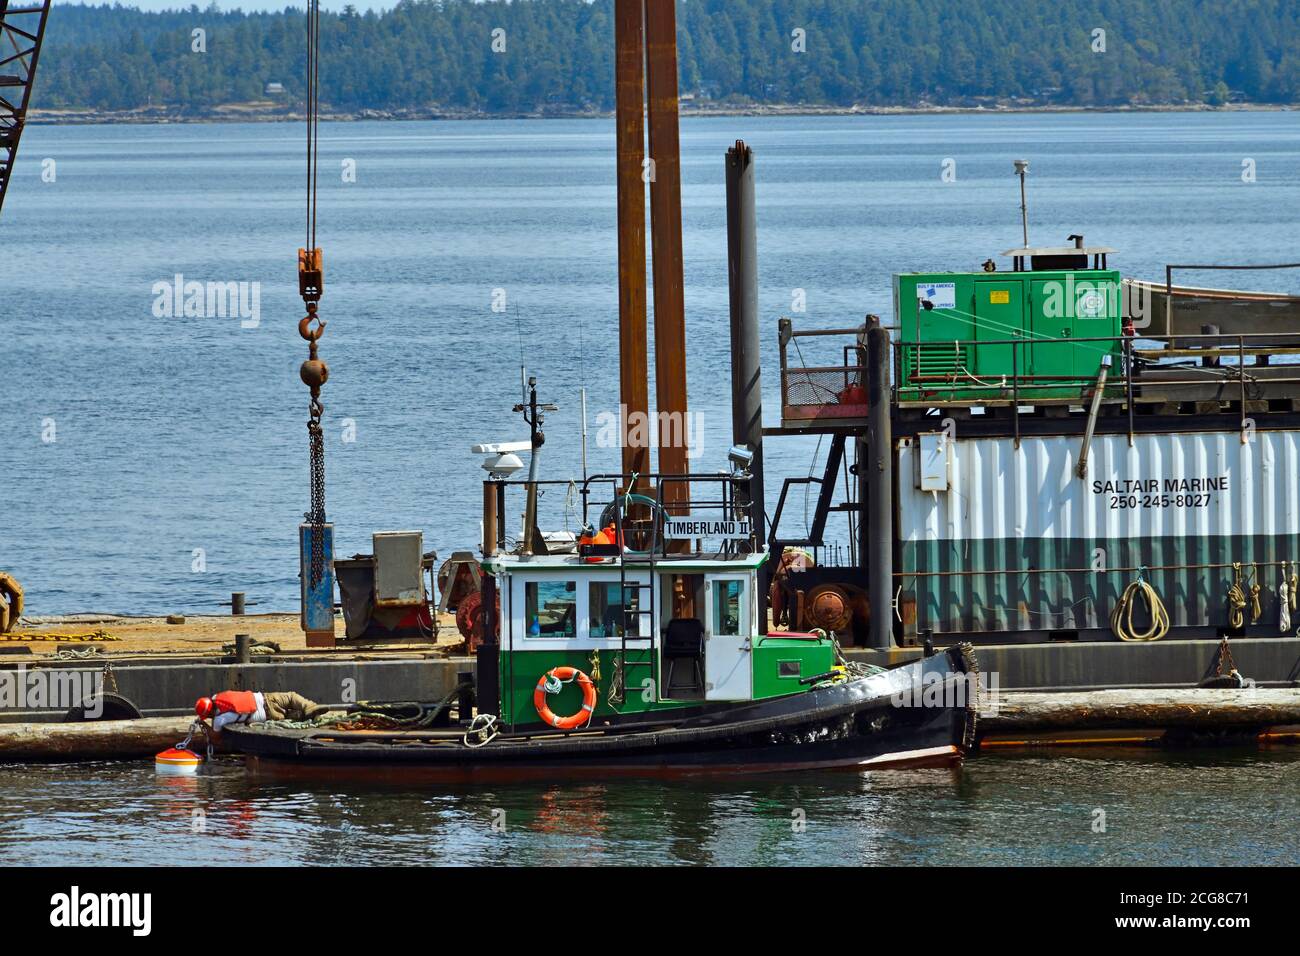 Un remorqueur tenant une barge avec une grue mobile en place pour placer un bouy amarrant dans le chenal Stuart sur l'île de Vancouver, C.-B. Canada. Banque D'Images